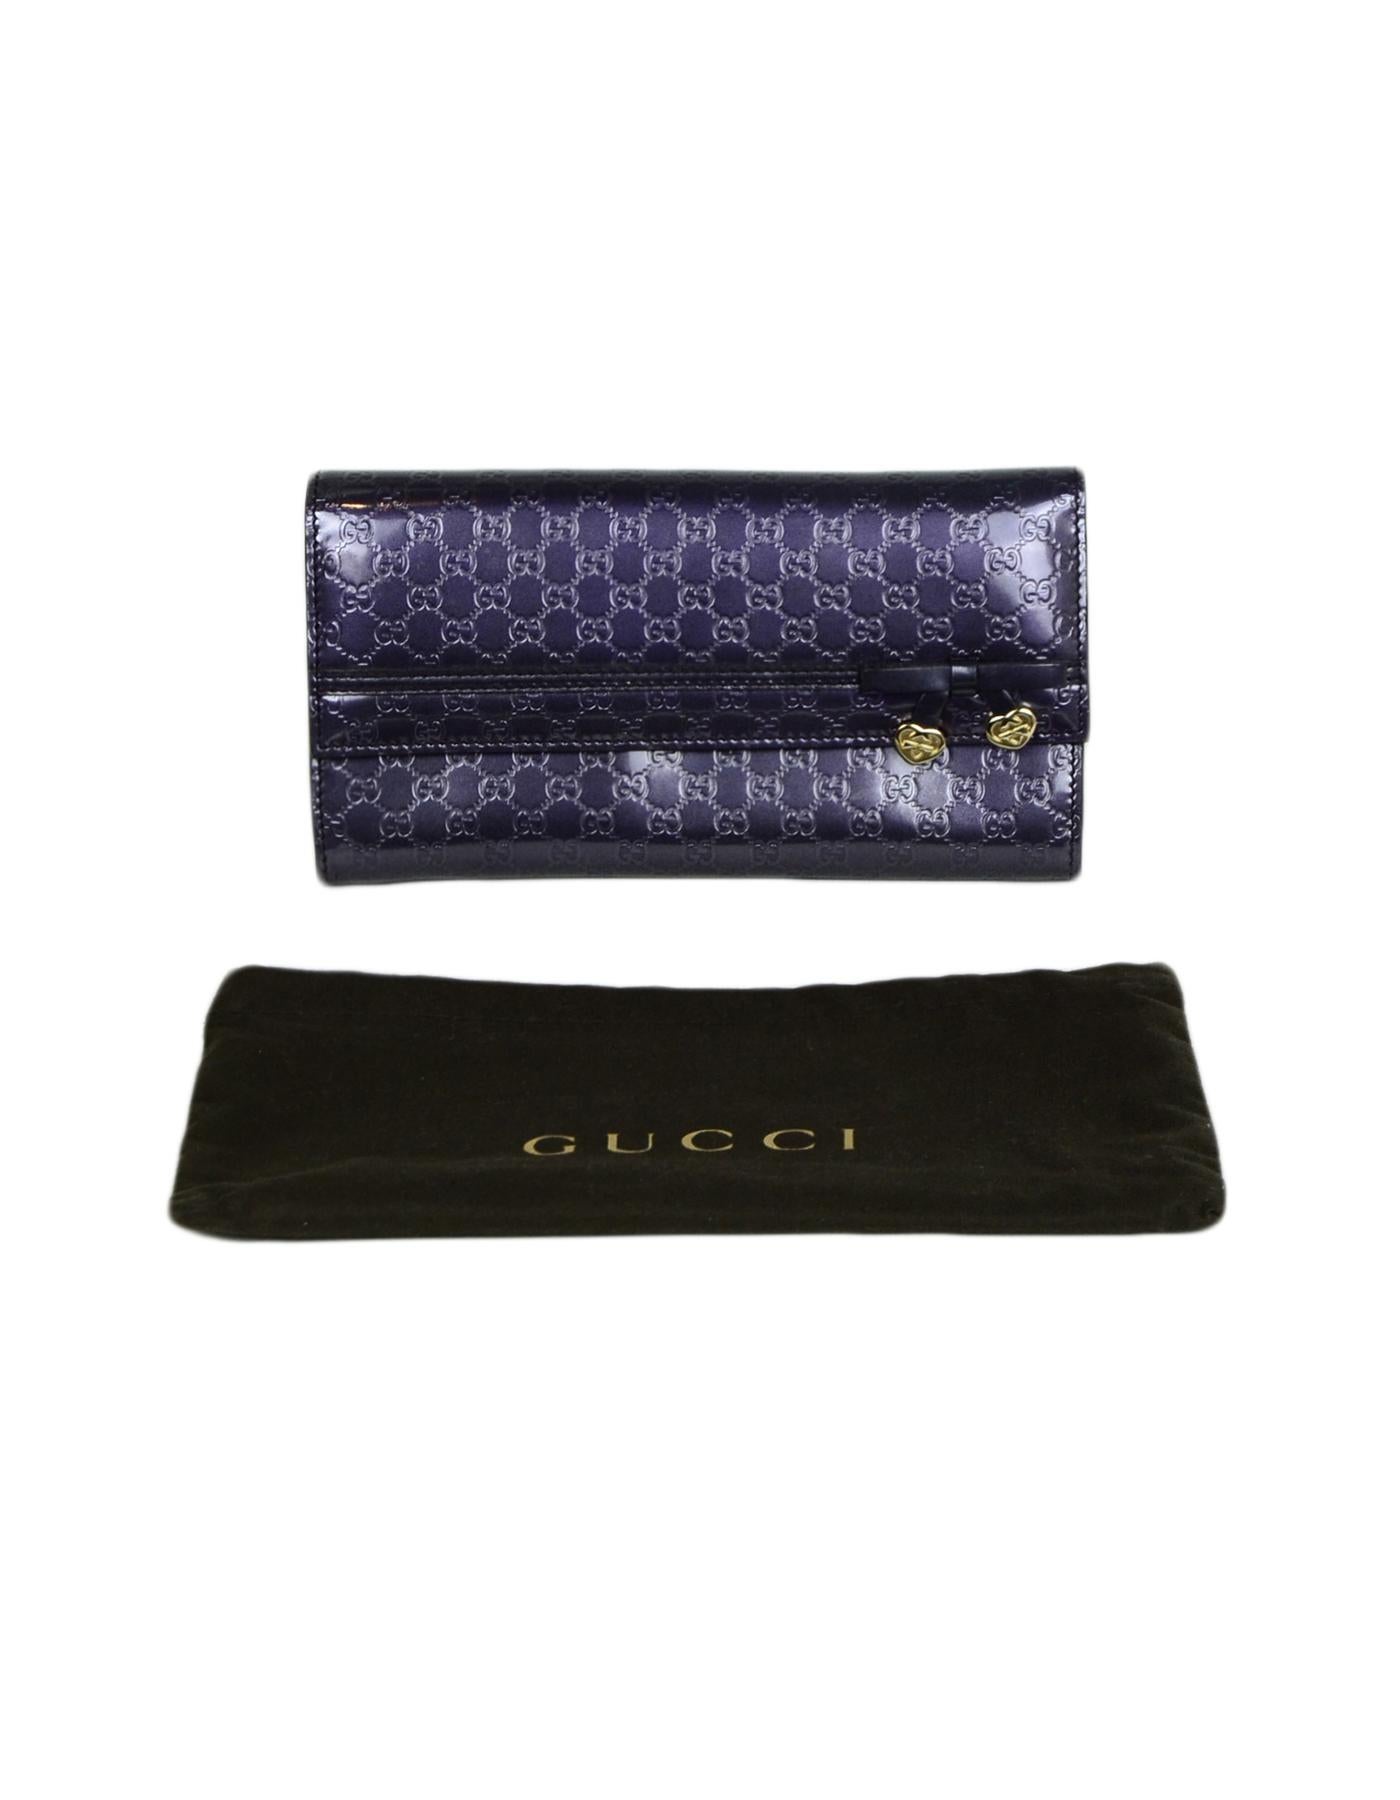 Gucci Purple Glazed Leather Micro Guccisima Monogram Candy Shine Wallet 3